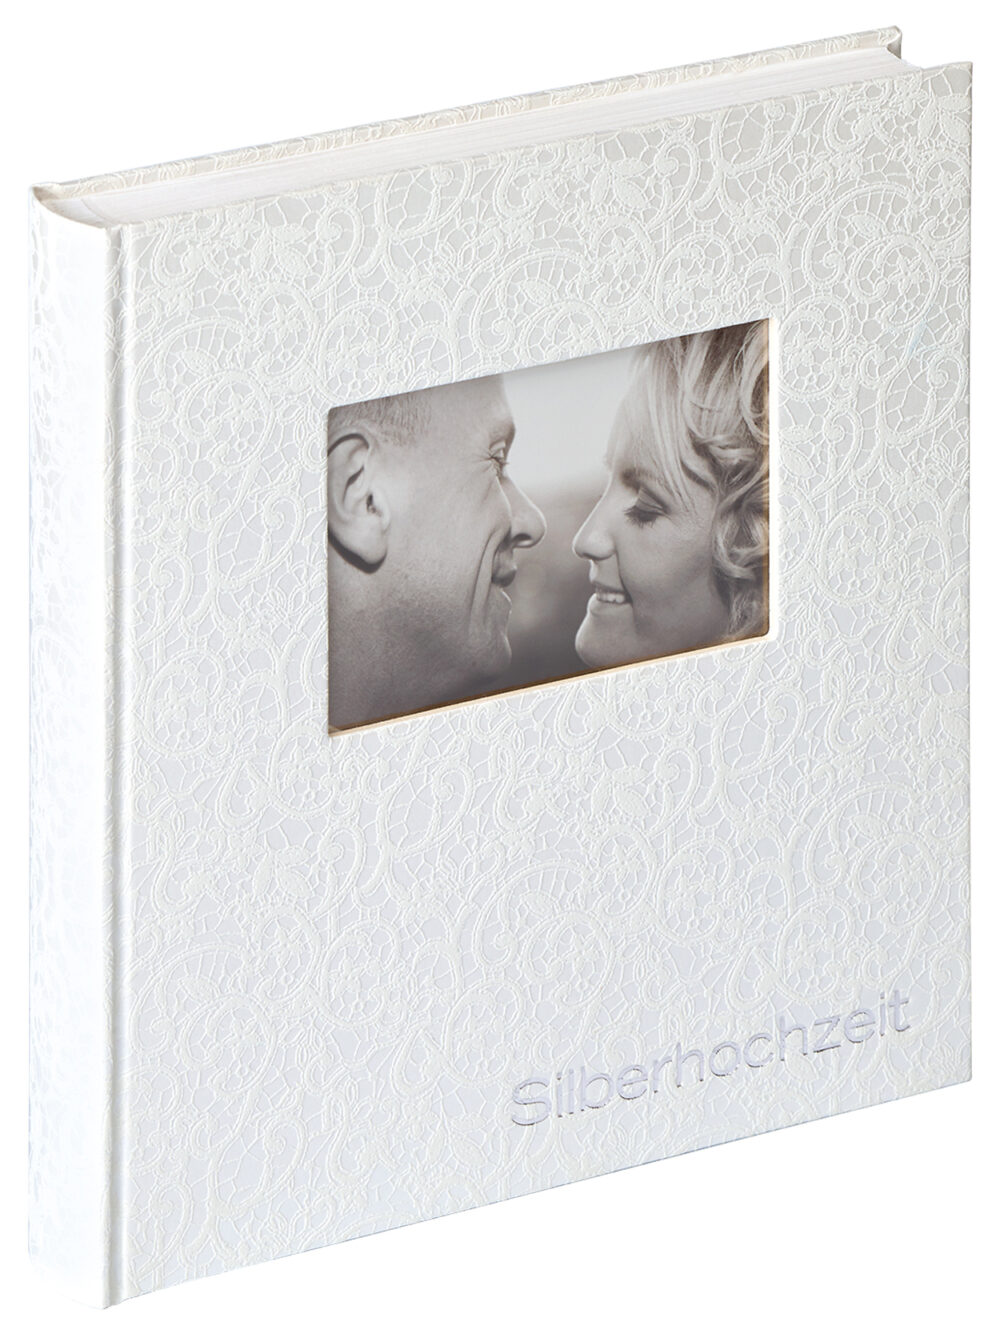 Fotoalbum Silberhochzeit Hochzeit Fotoalben Music 28X30,5 cm Walther Design Online kaufen Missforty